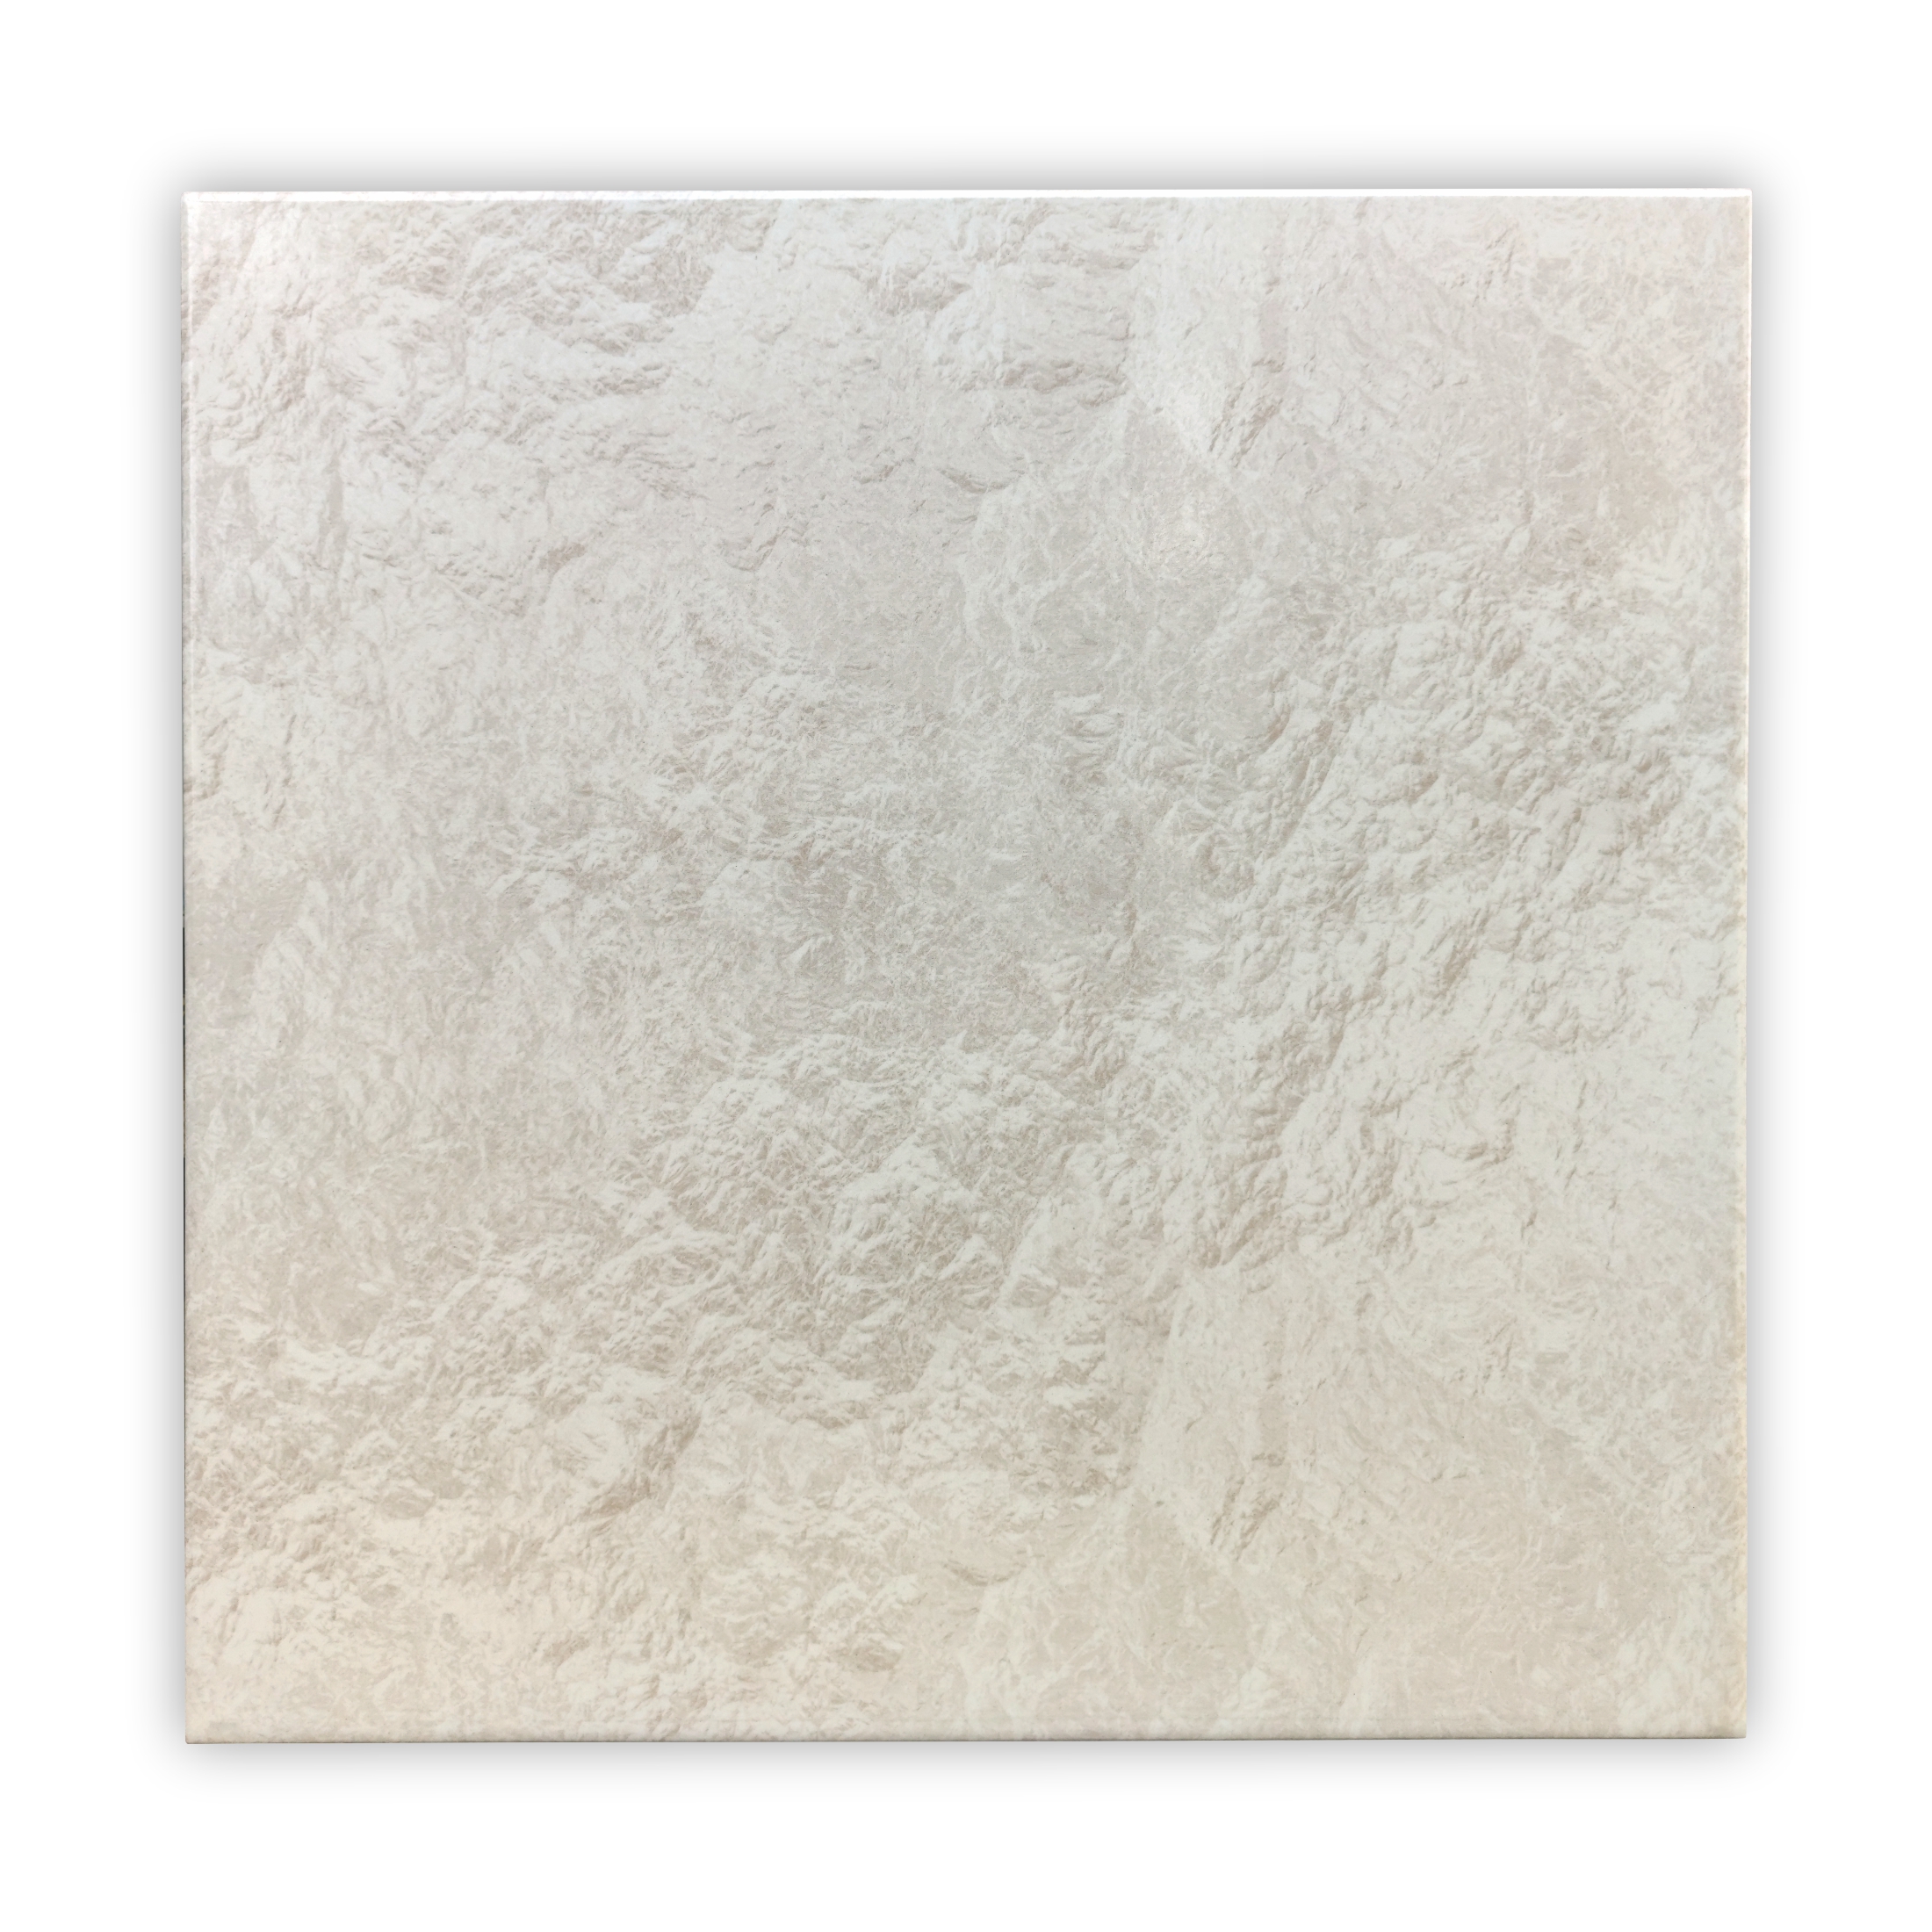 Gresie portelanata, polisata, rectificata, interior / exterior Doruk White 42.5 x 42.5